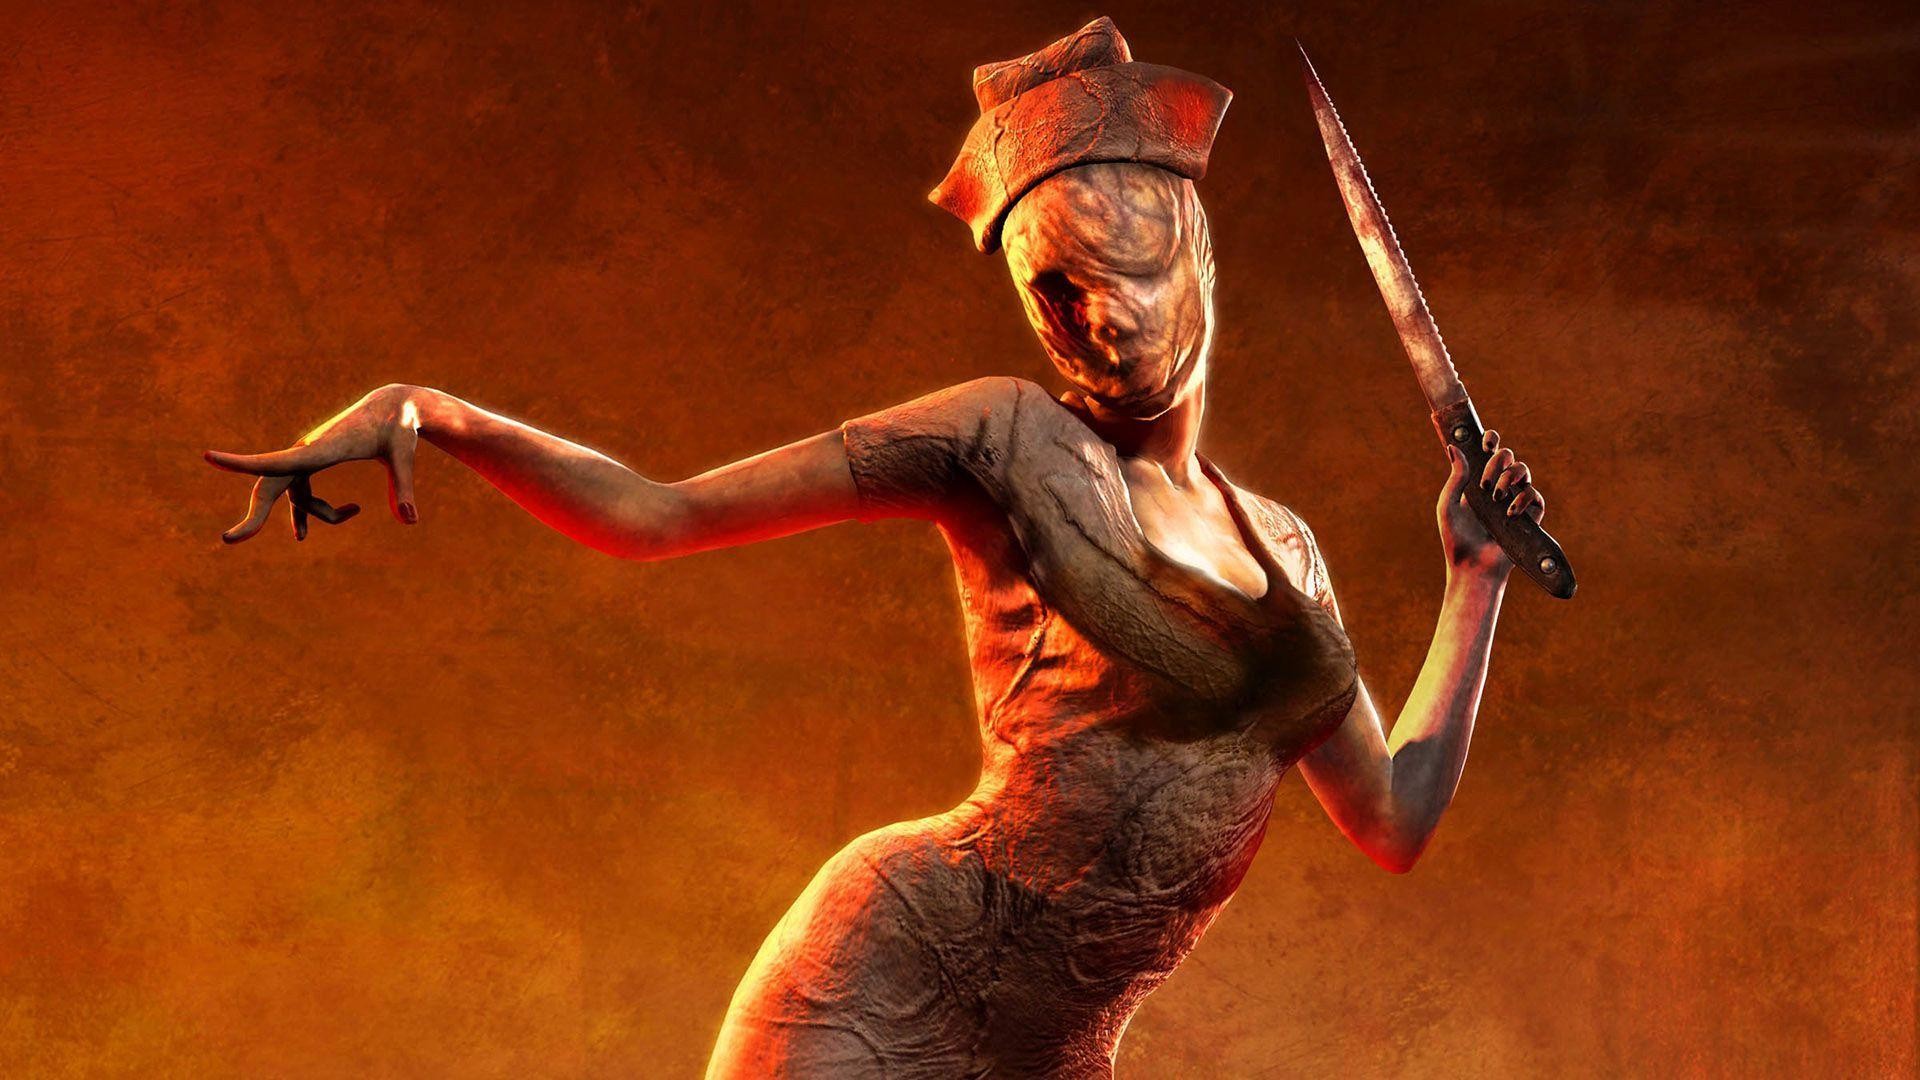 Đạo diễn Silent Hill nhận định có nhiều studio đang thực hiện các game mới dựa trên tác phẩm này